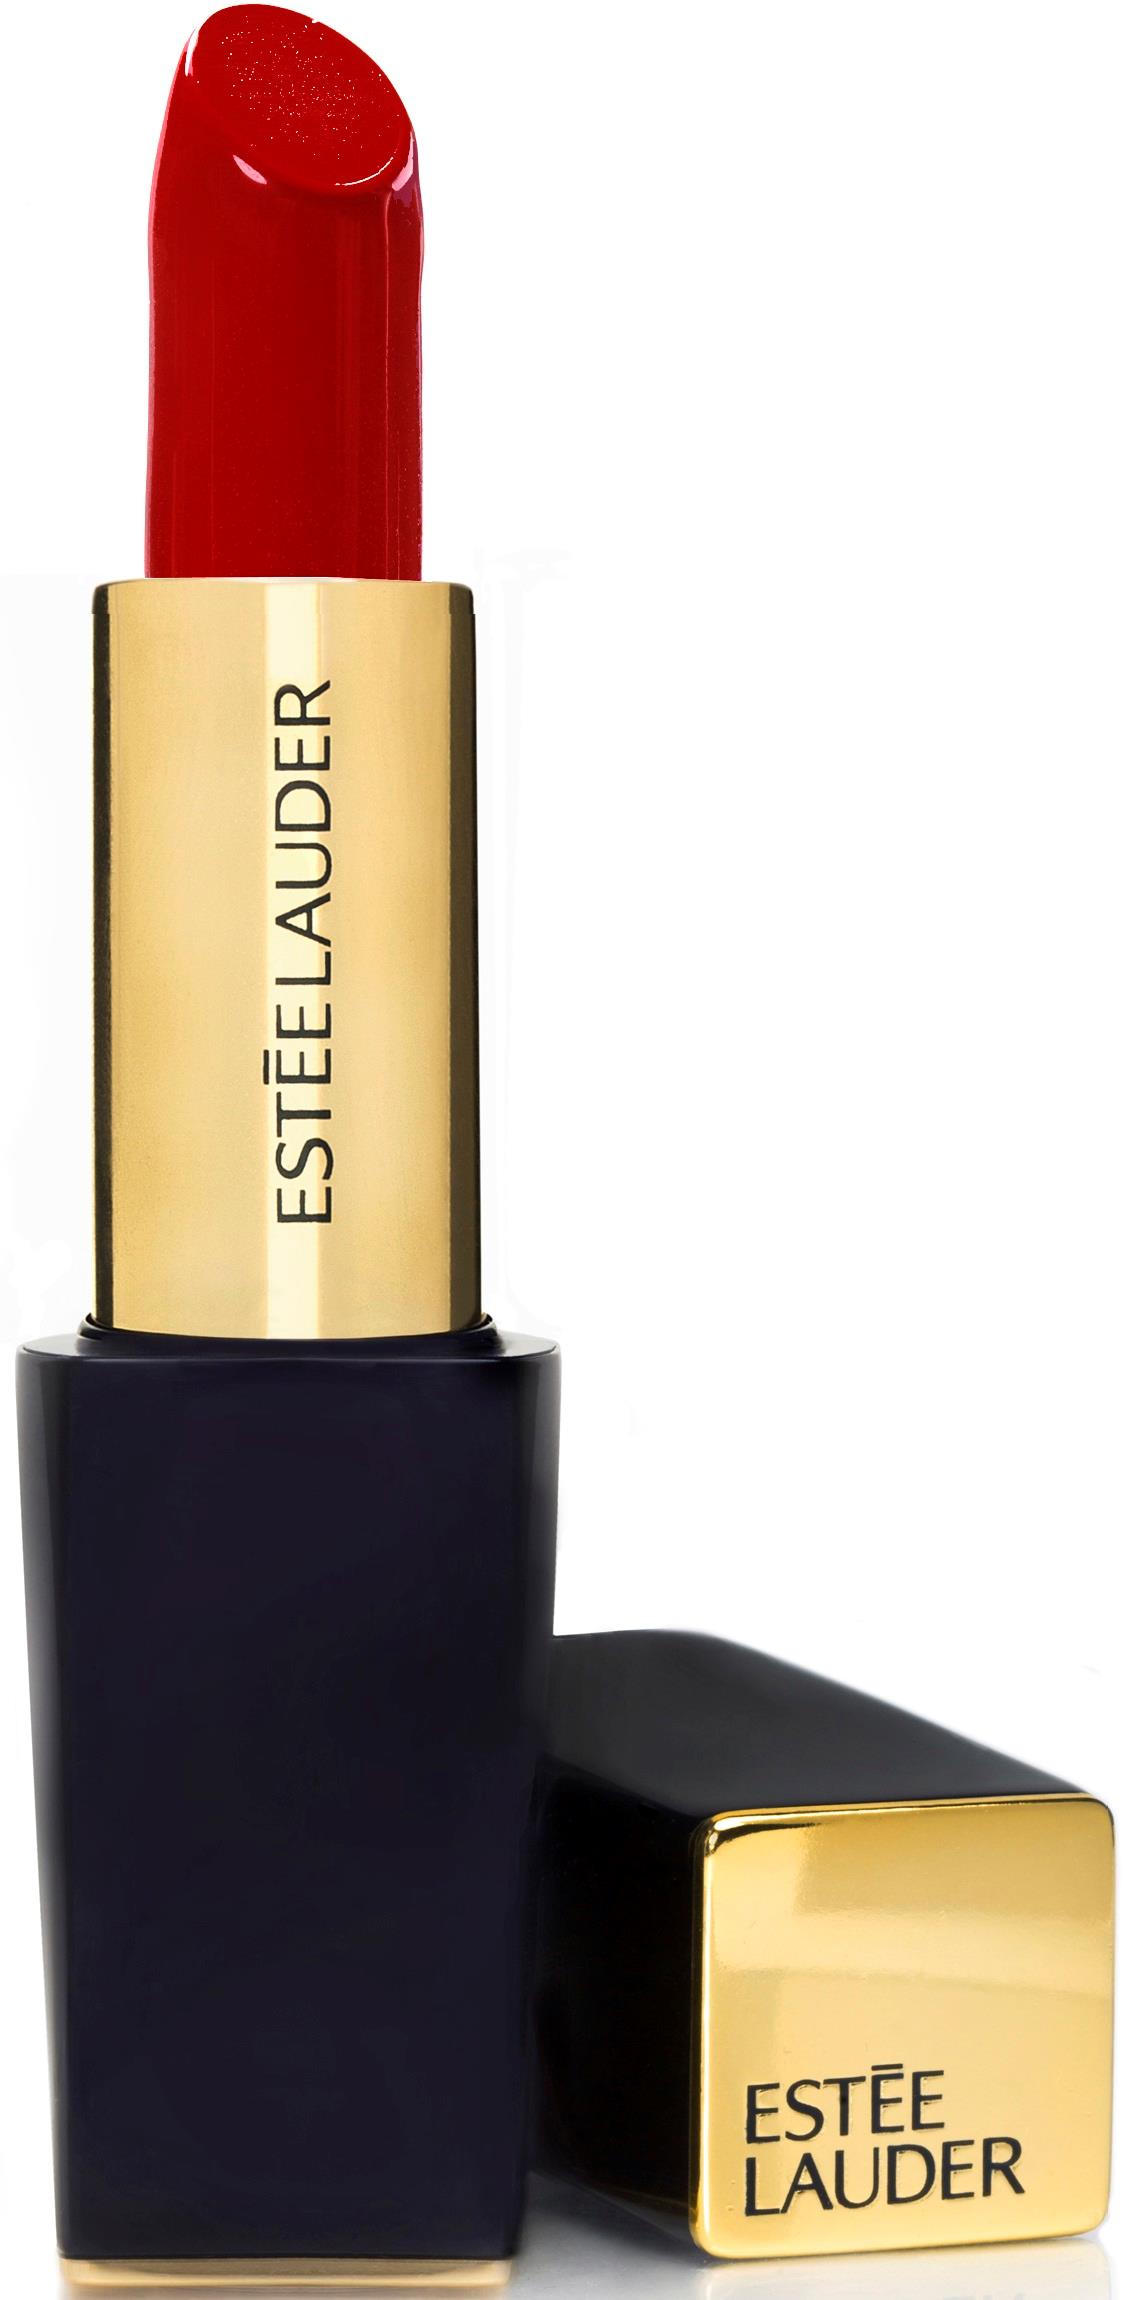 Son Estée Lauder 340 Envious - Pure Color Envy Sculpting Lipstick